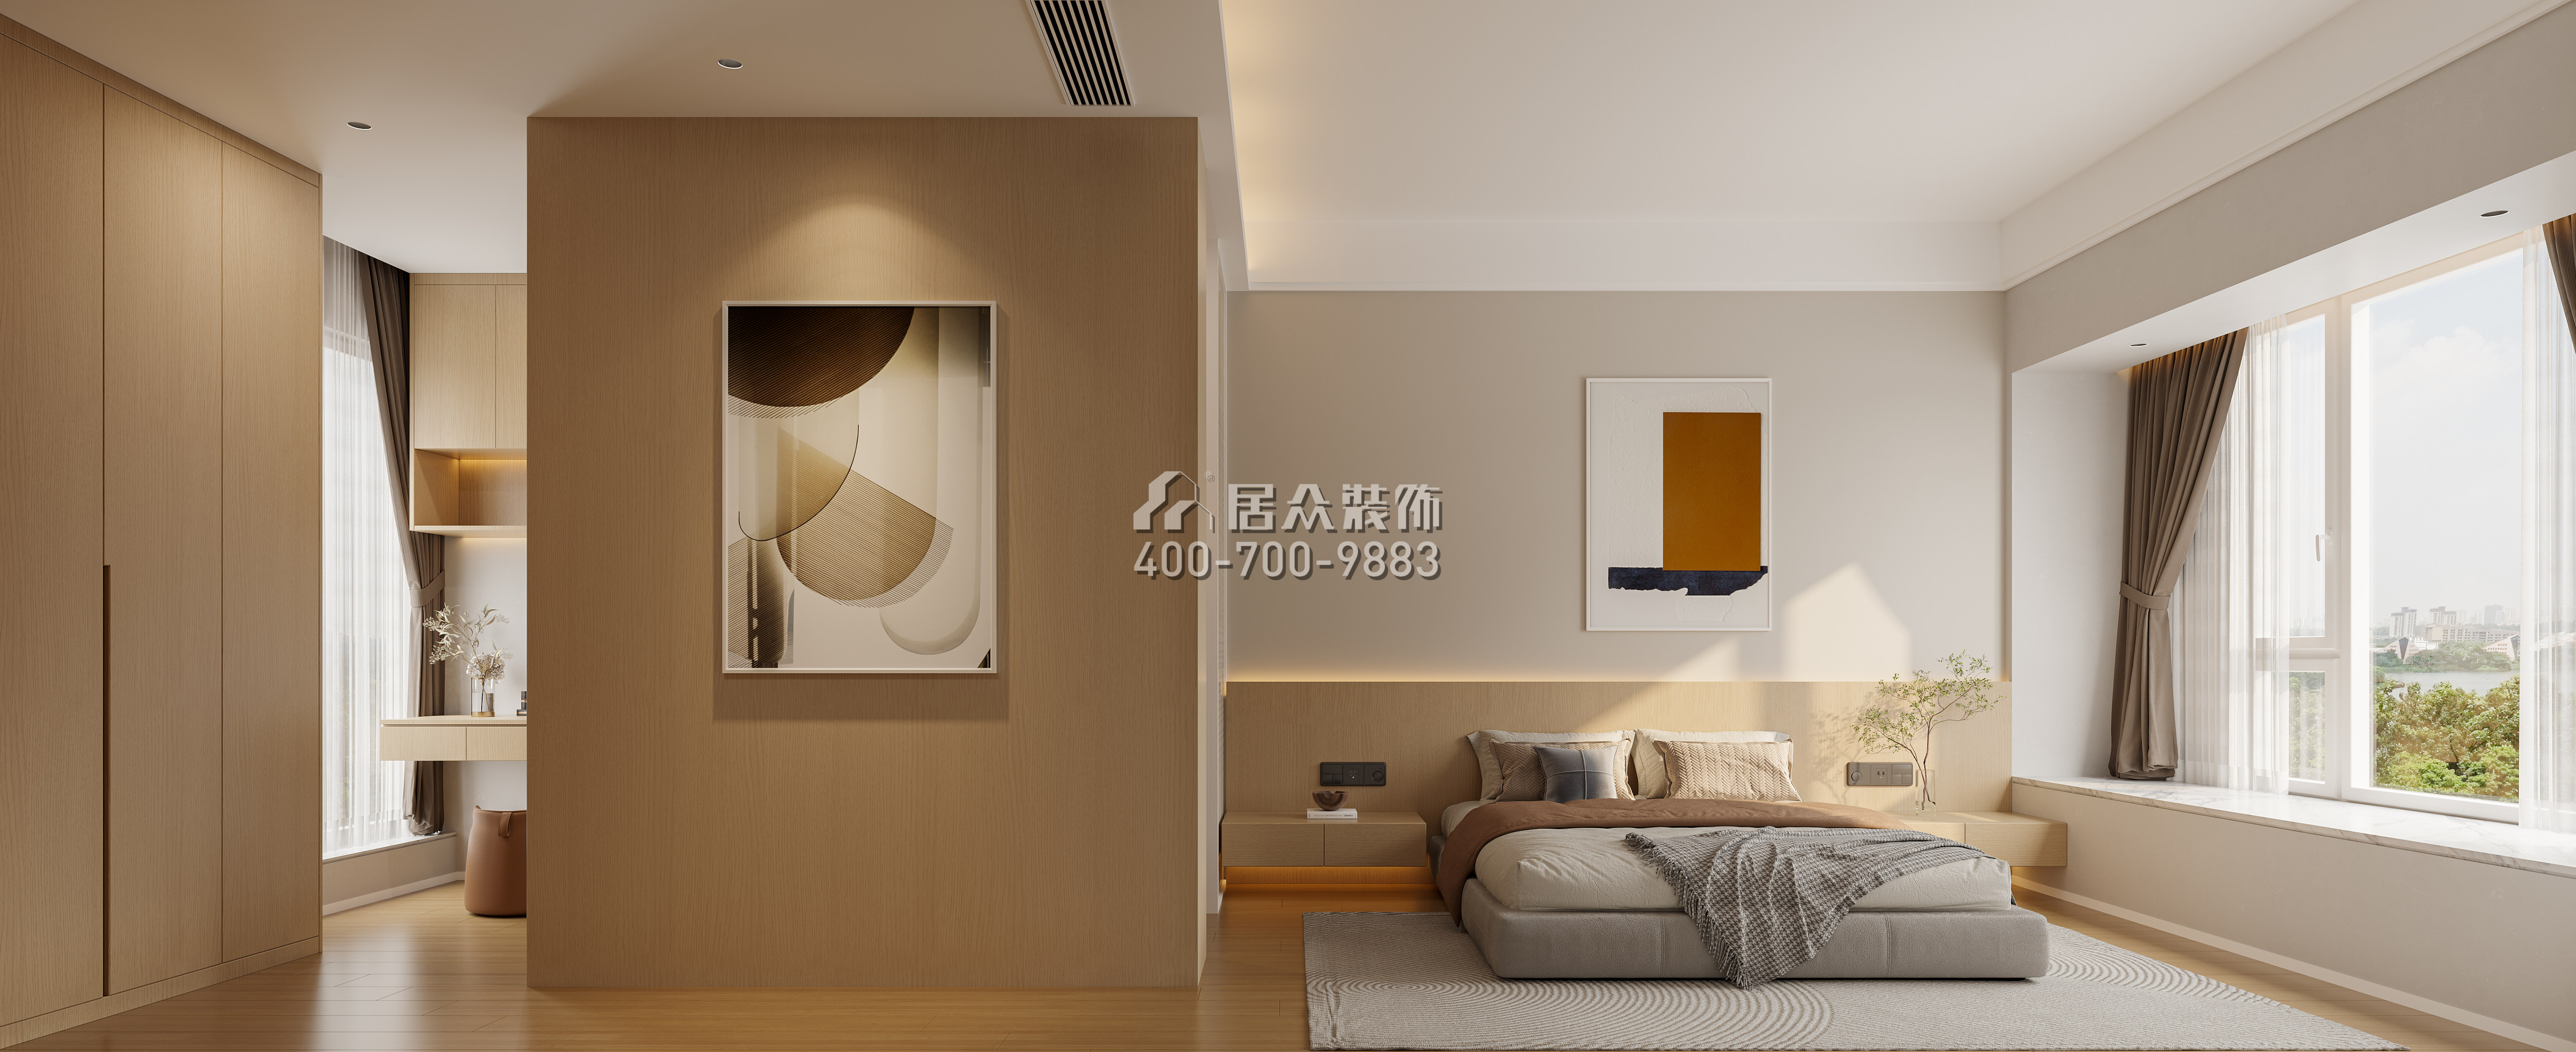 海印长城136平方米现代简约风格平层户型卧室装修效果图